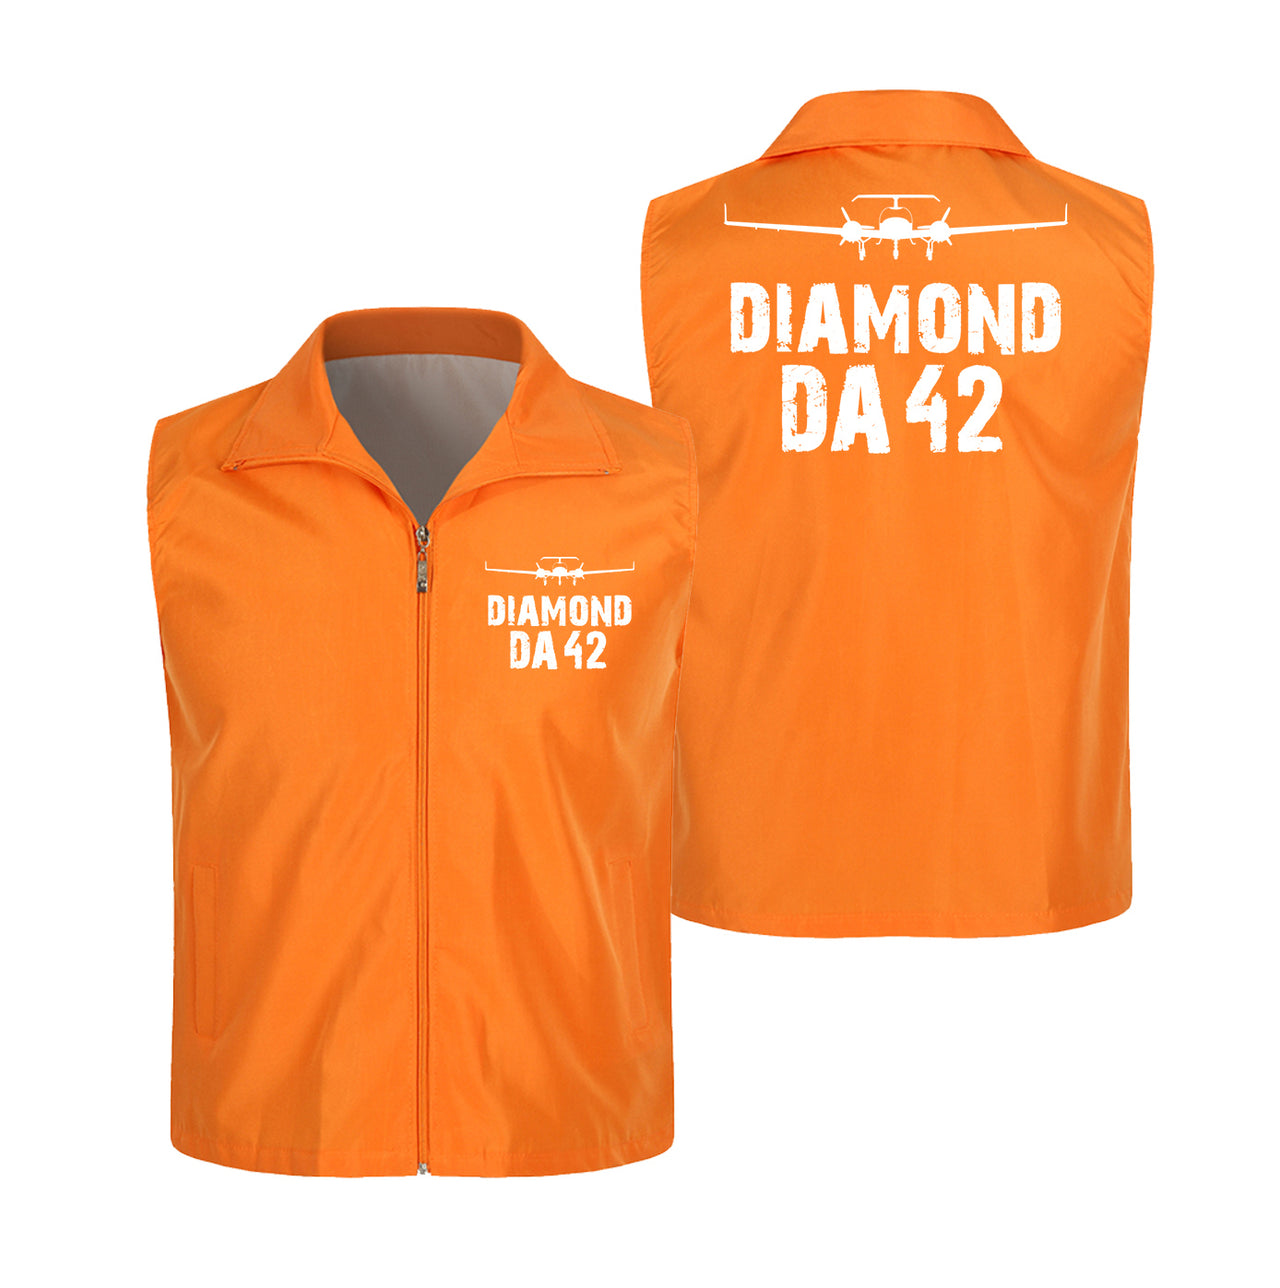 Diamond DA42 & Plane Designed Thin Style Vests